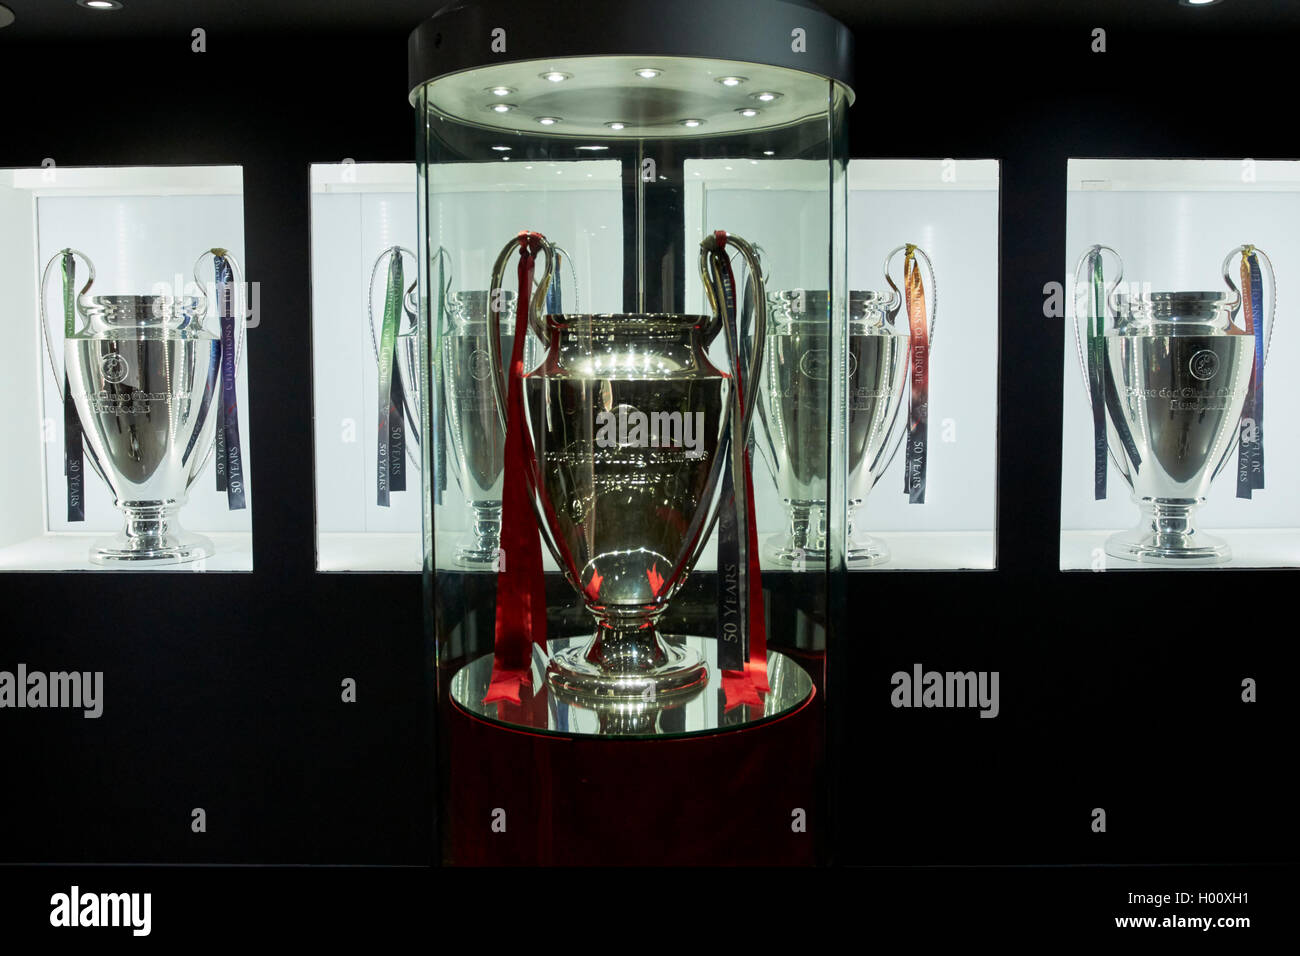 Coppa europea di champions league trophy camera in Museum Liverpool FC anfield stadium Liverpool Merseyside Regno Unito Foto Stock